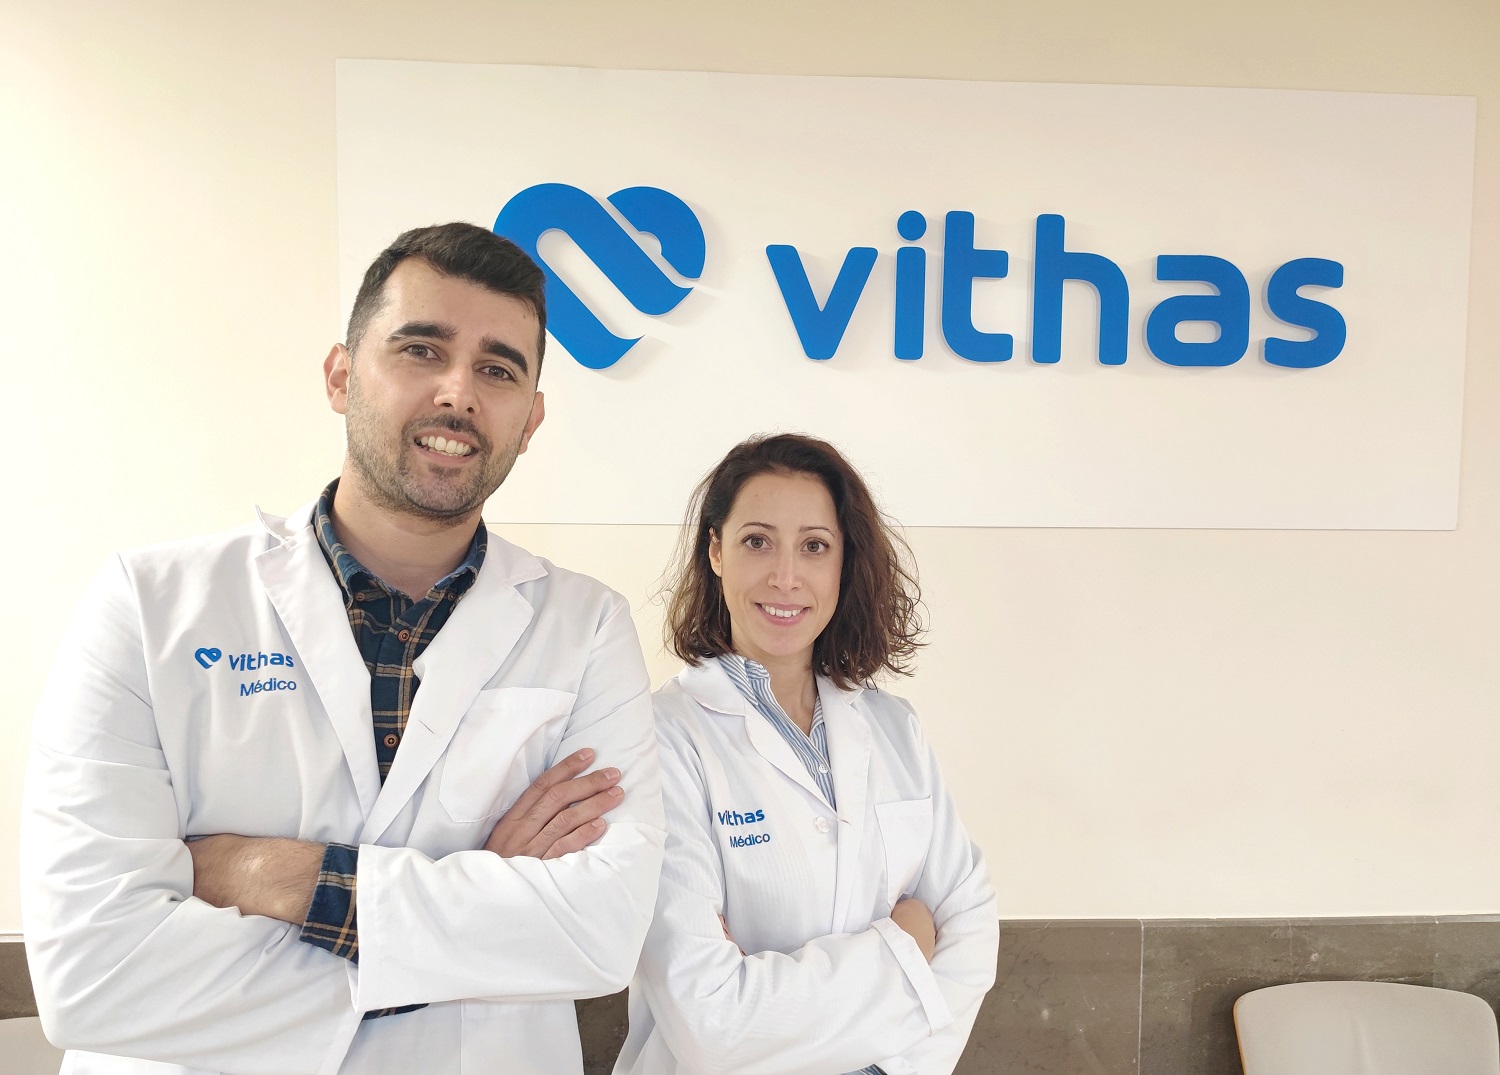 Vithas Málaga y ADIMA organizan un Aula Salud sobre los cuidados y prevención del pie diabético